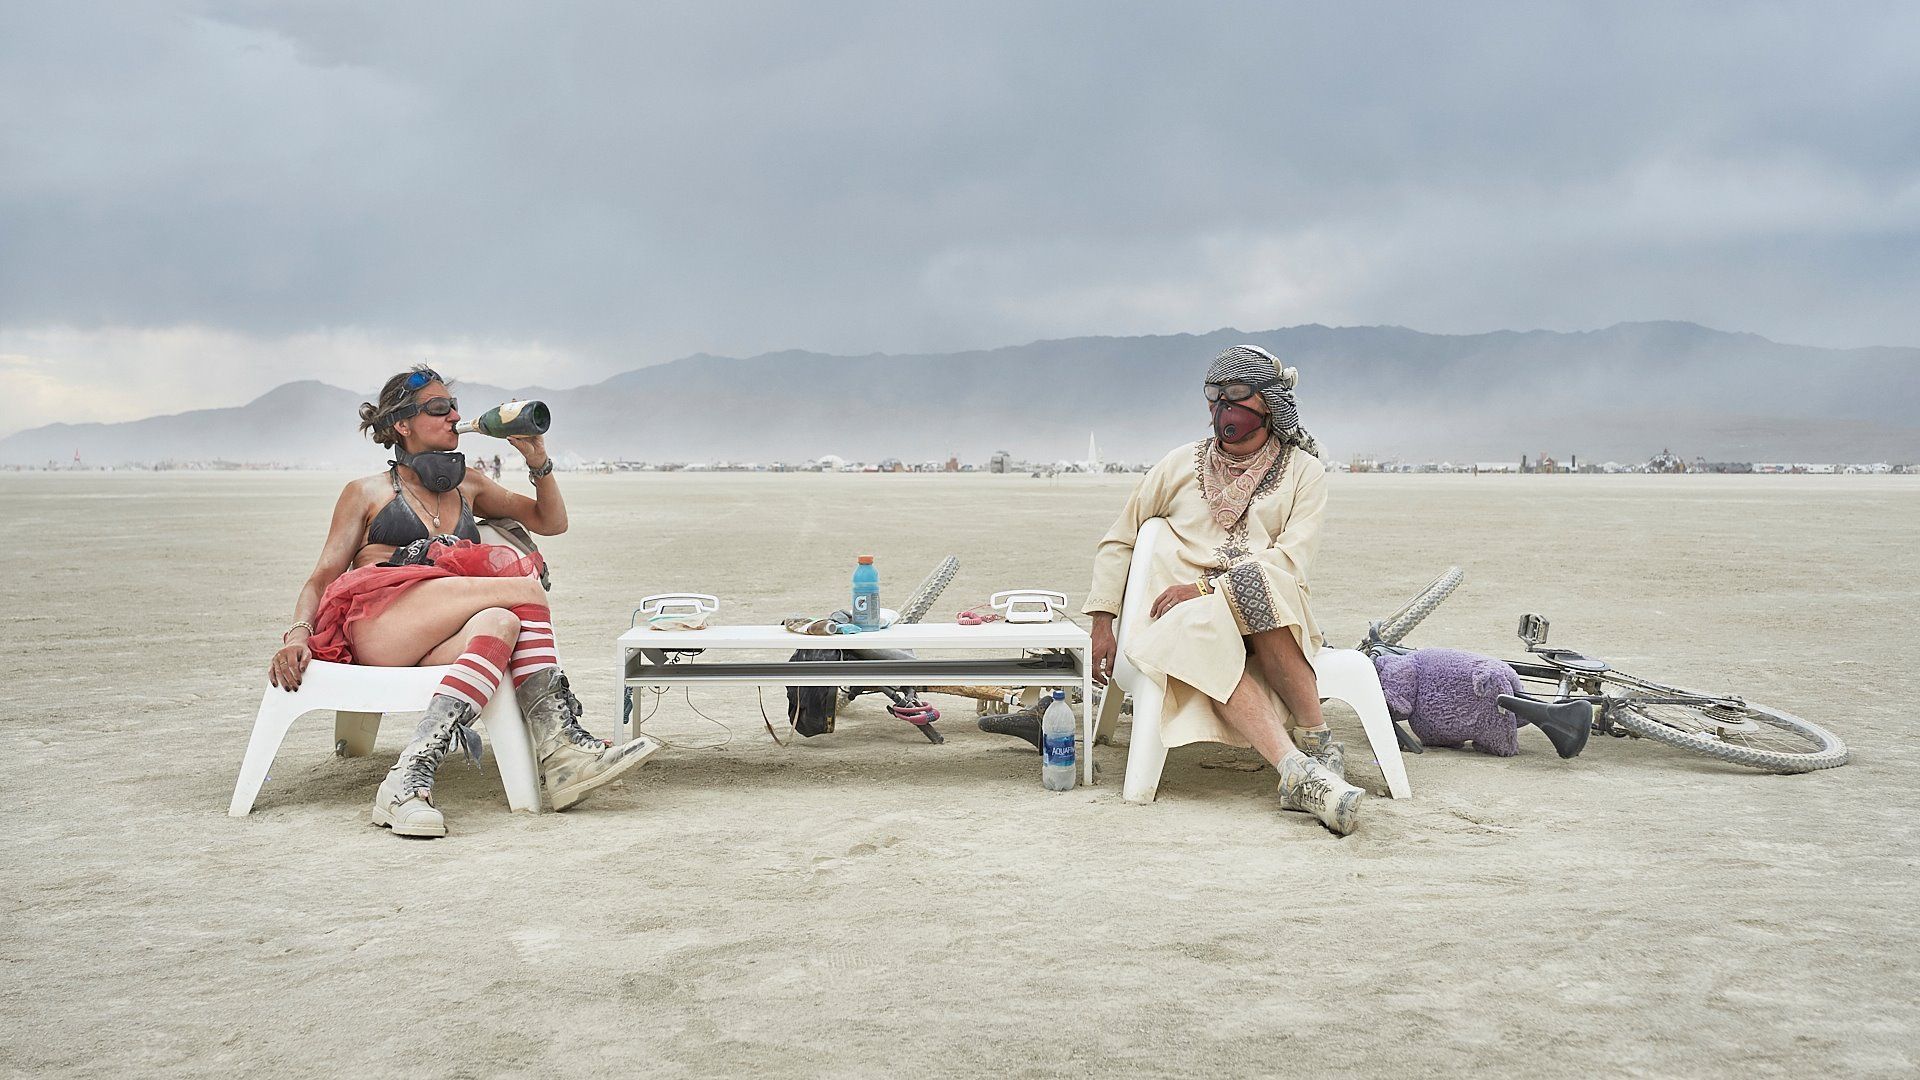 “Burning Man : sous la poussière, la plage”